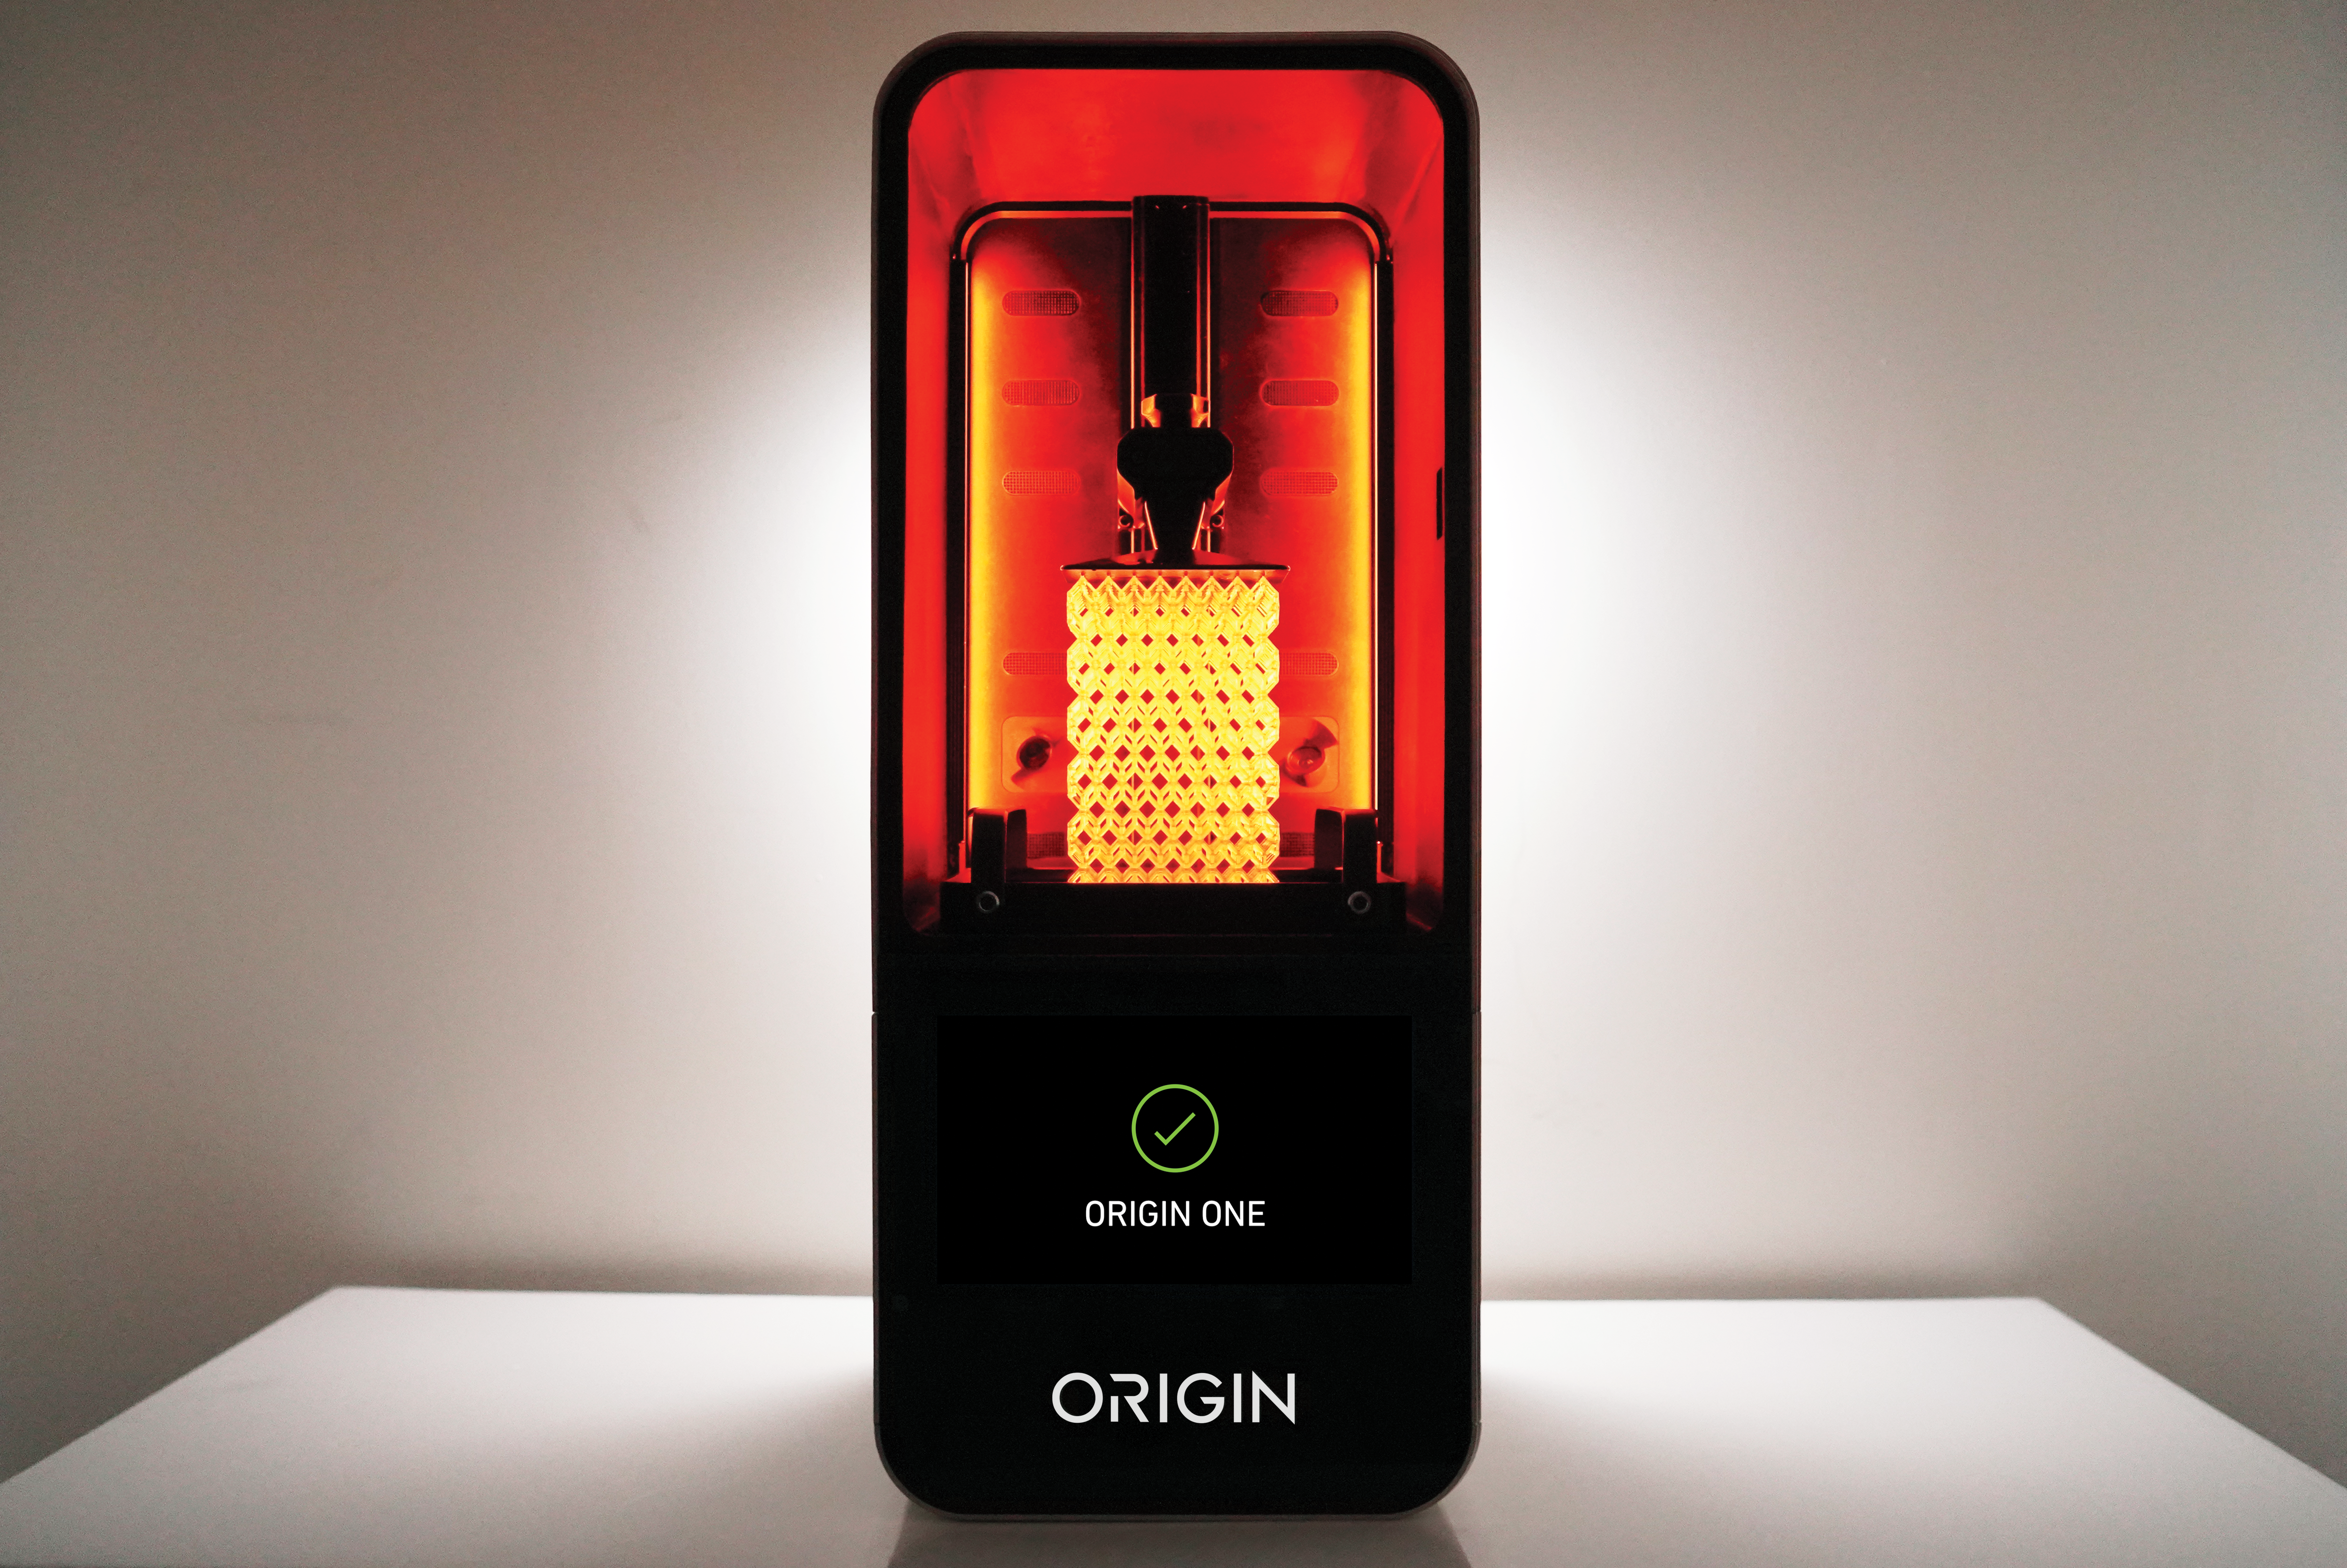 The Origin One 3D printer. Image via Origin.